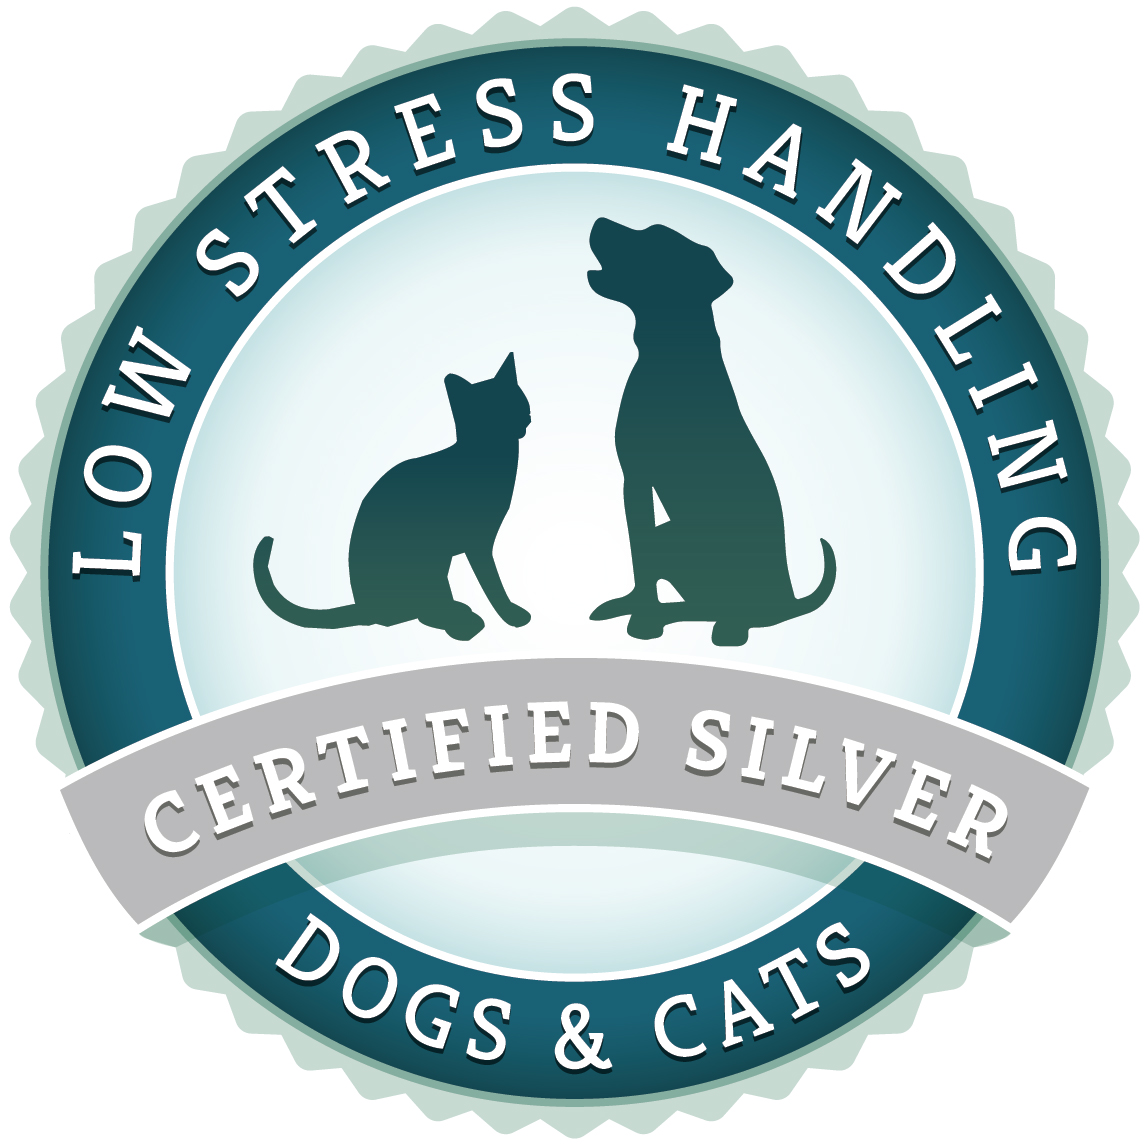 low stress handling logo